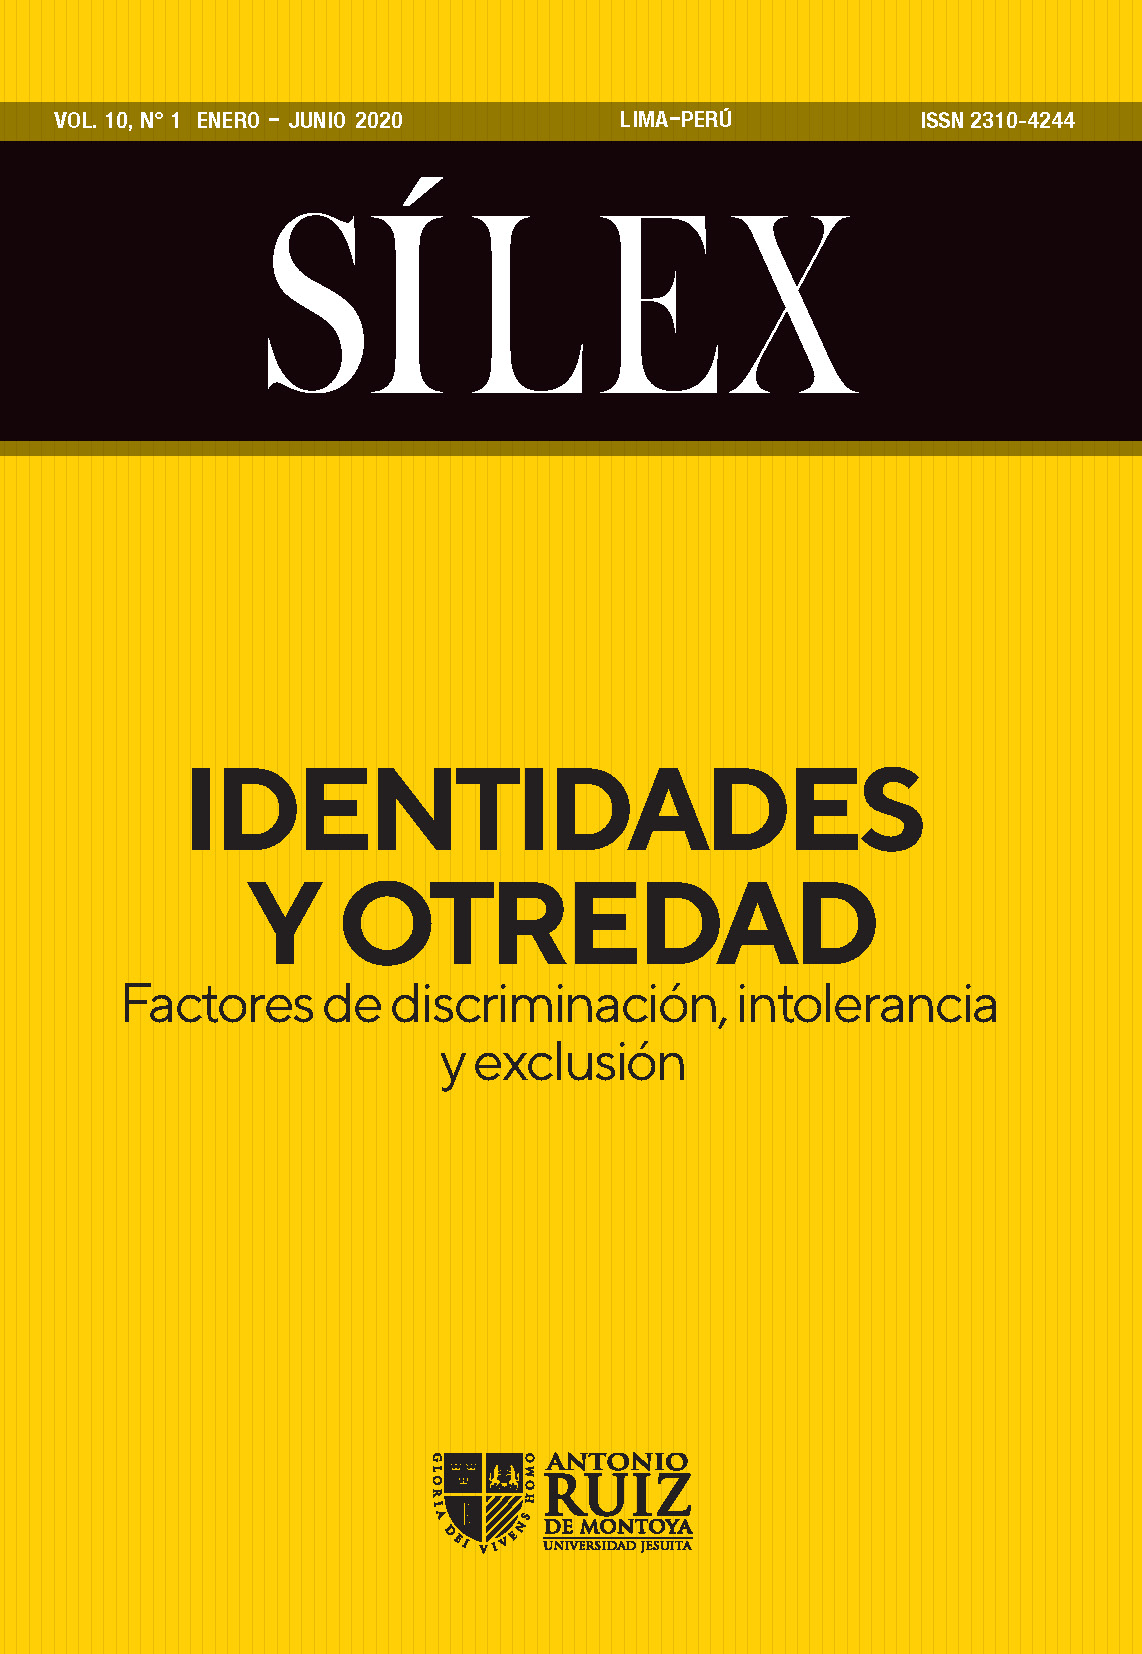 					Ver Vol. 10 Núm. 1 (2020): Identidades y otredad, factores de discriminación, intolerancia y exclusión
				